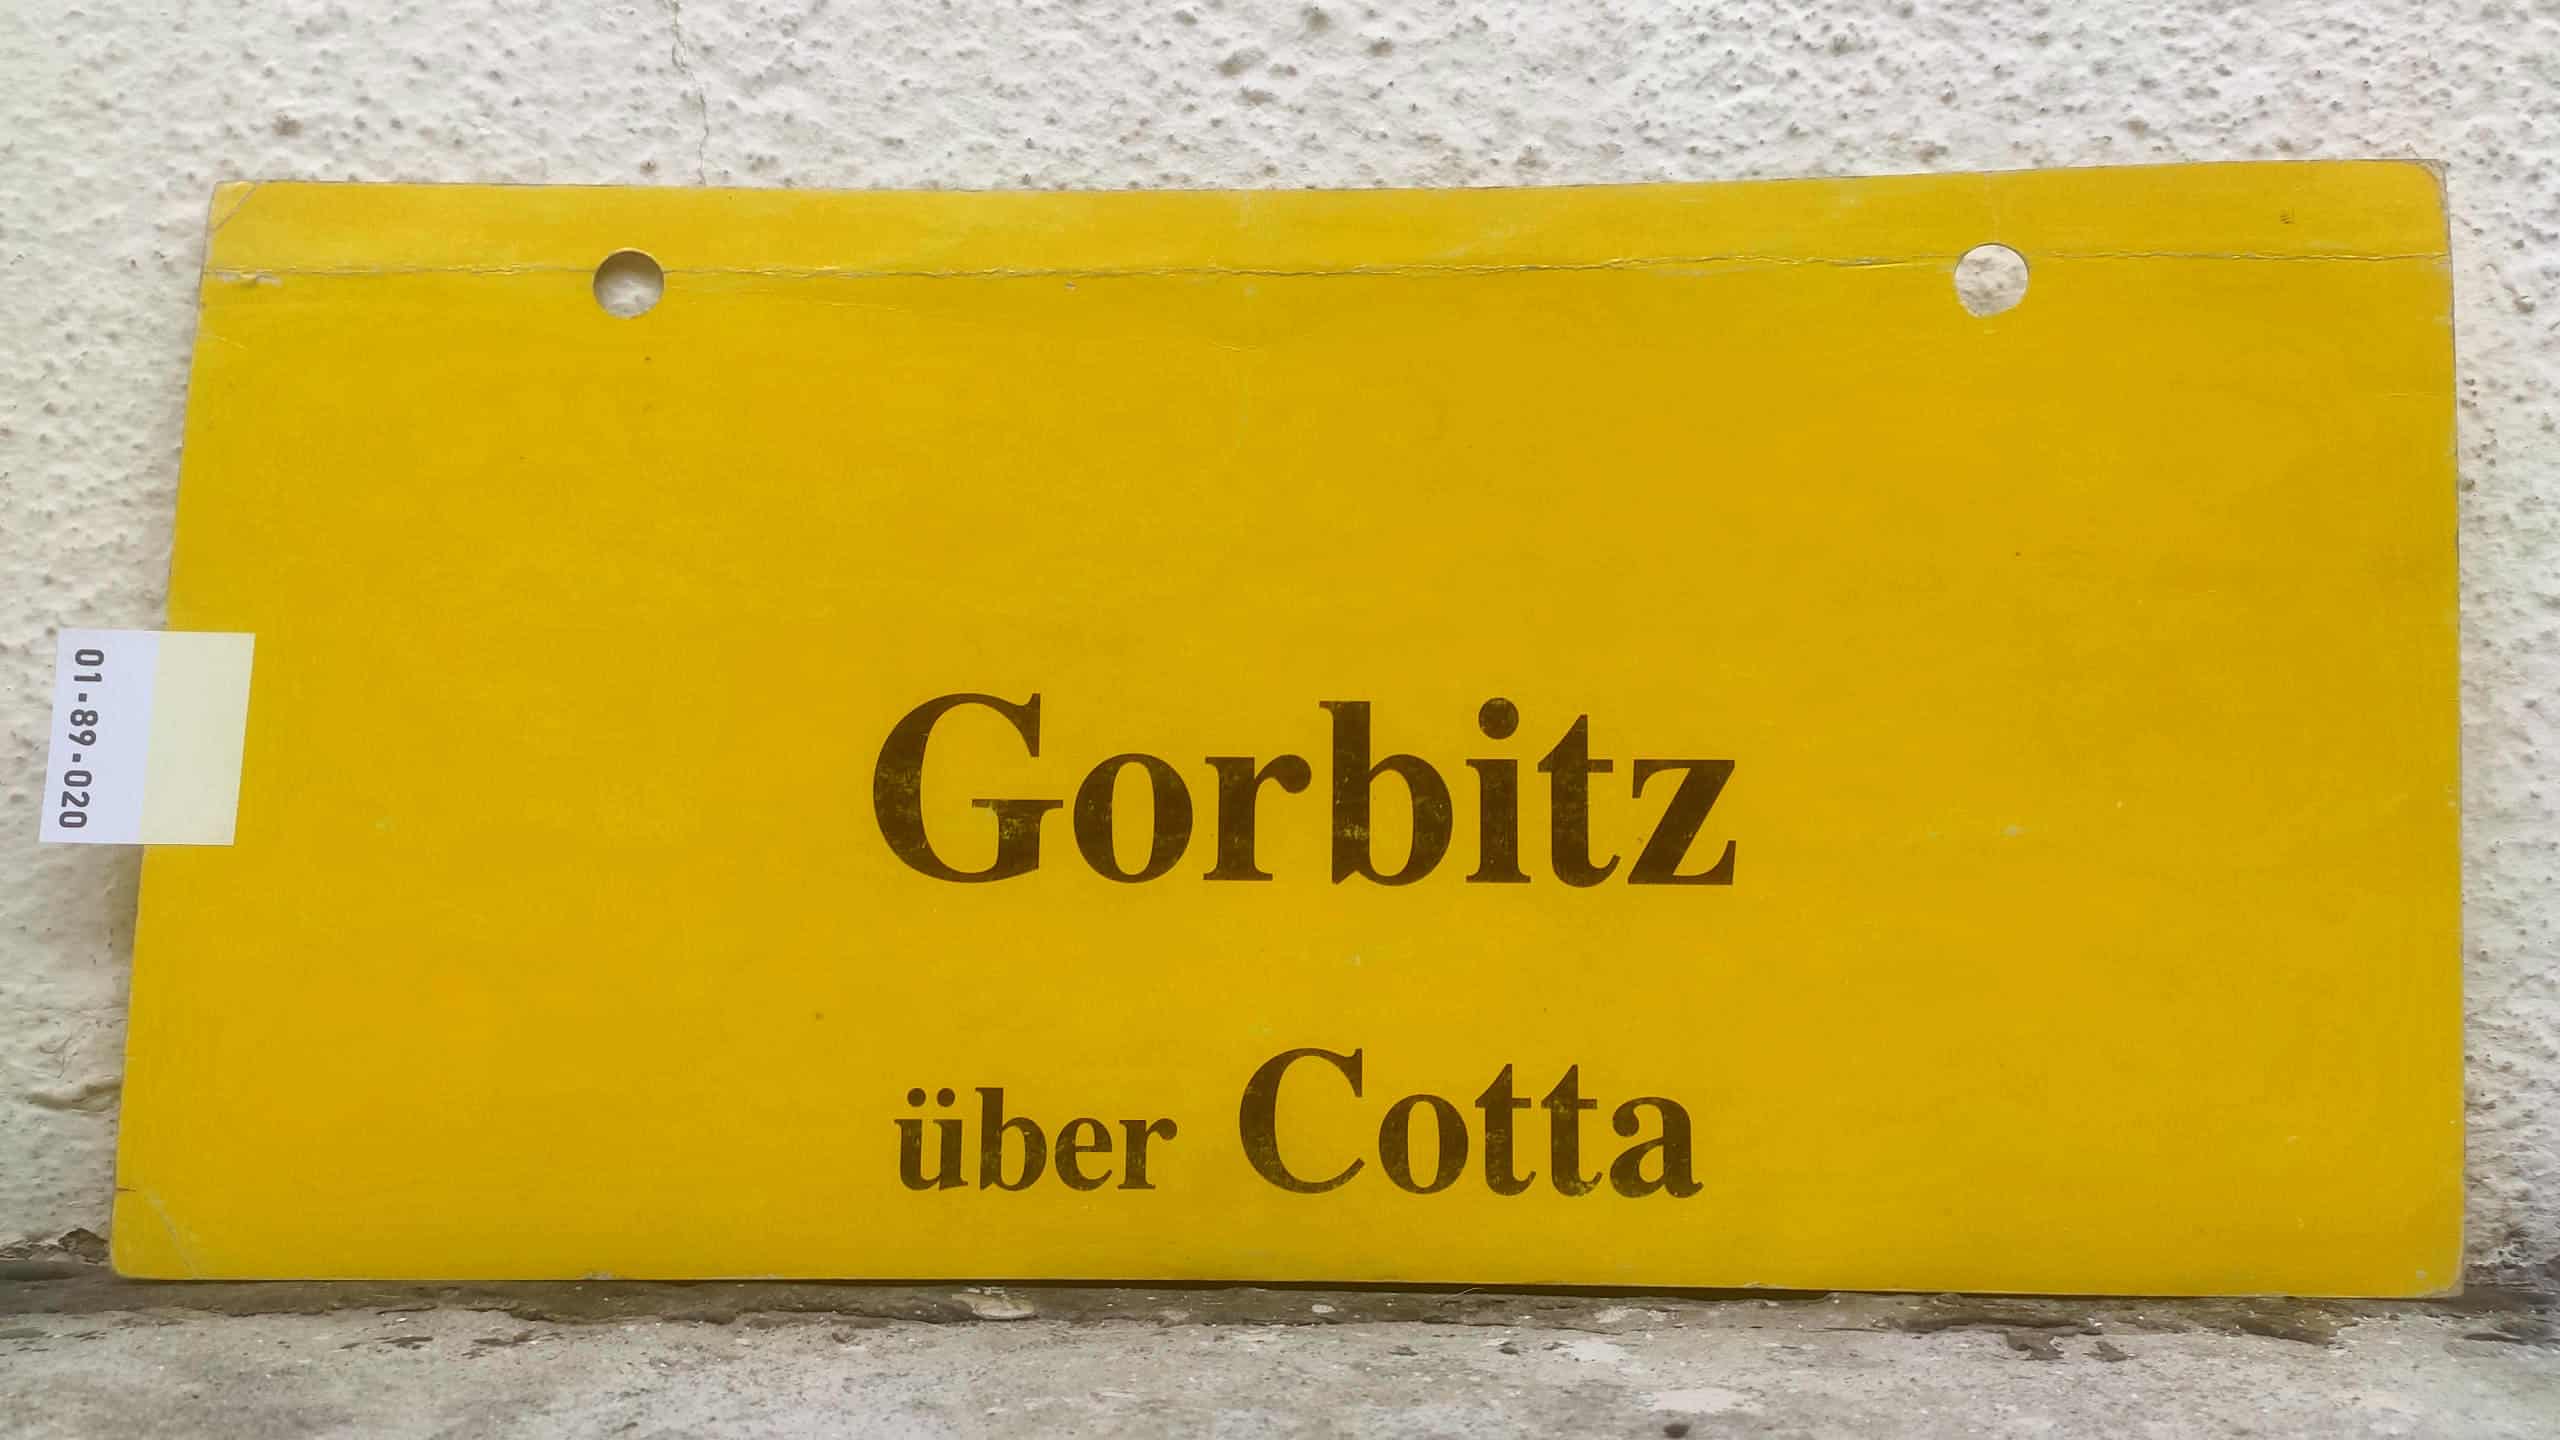 Gorbitz über Cotta